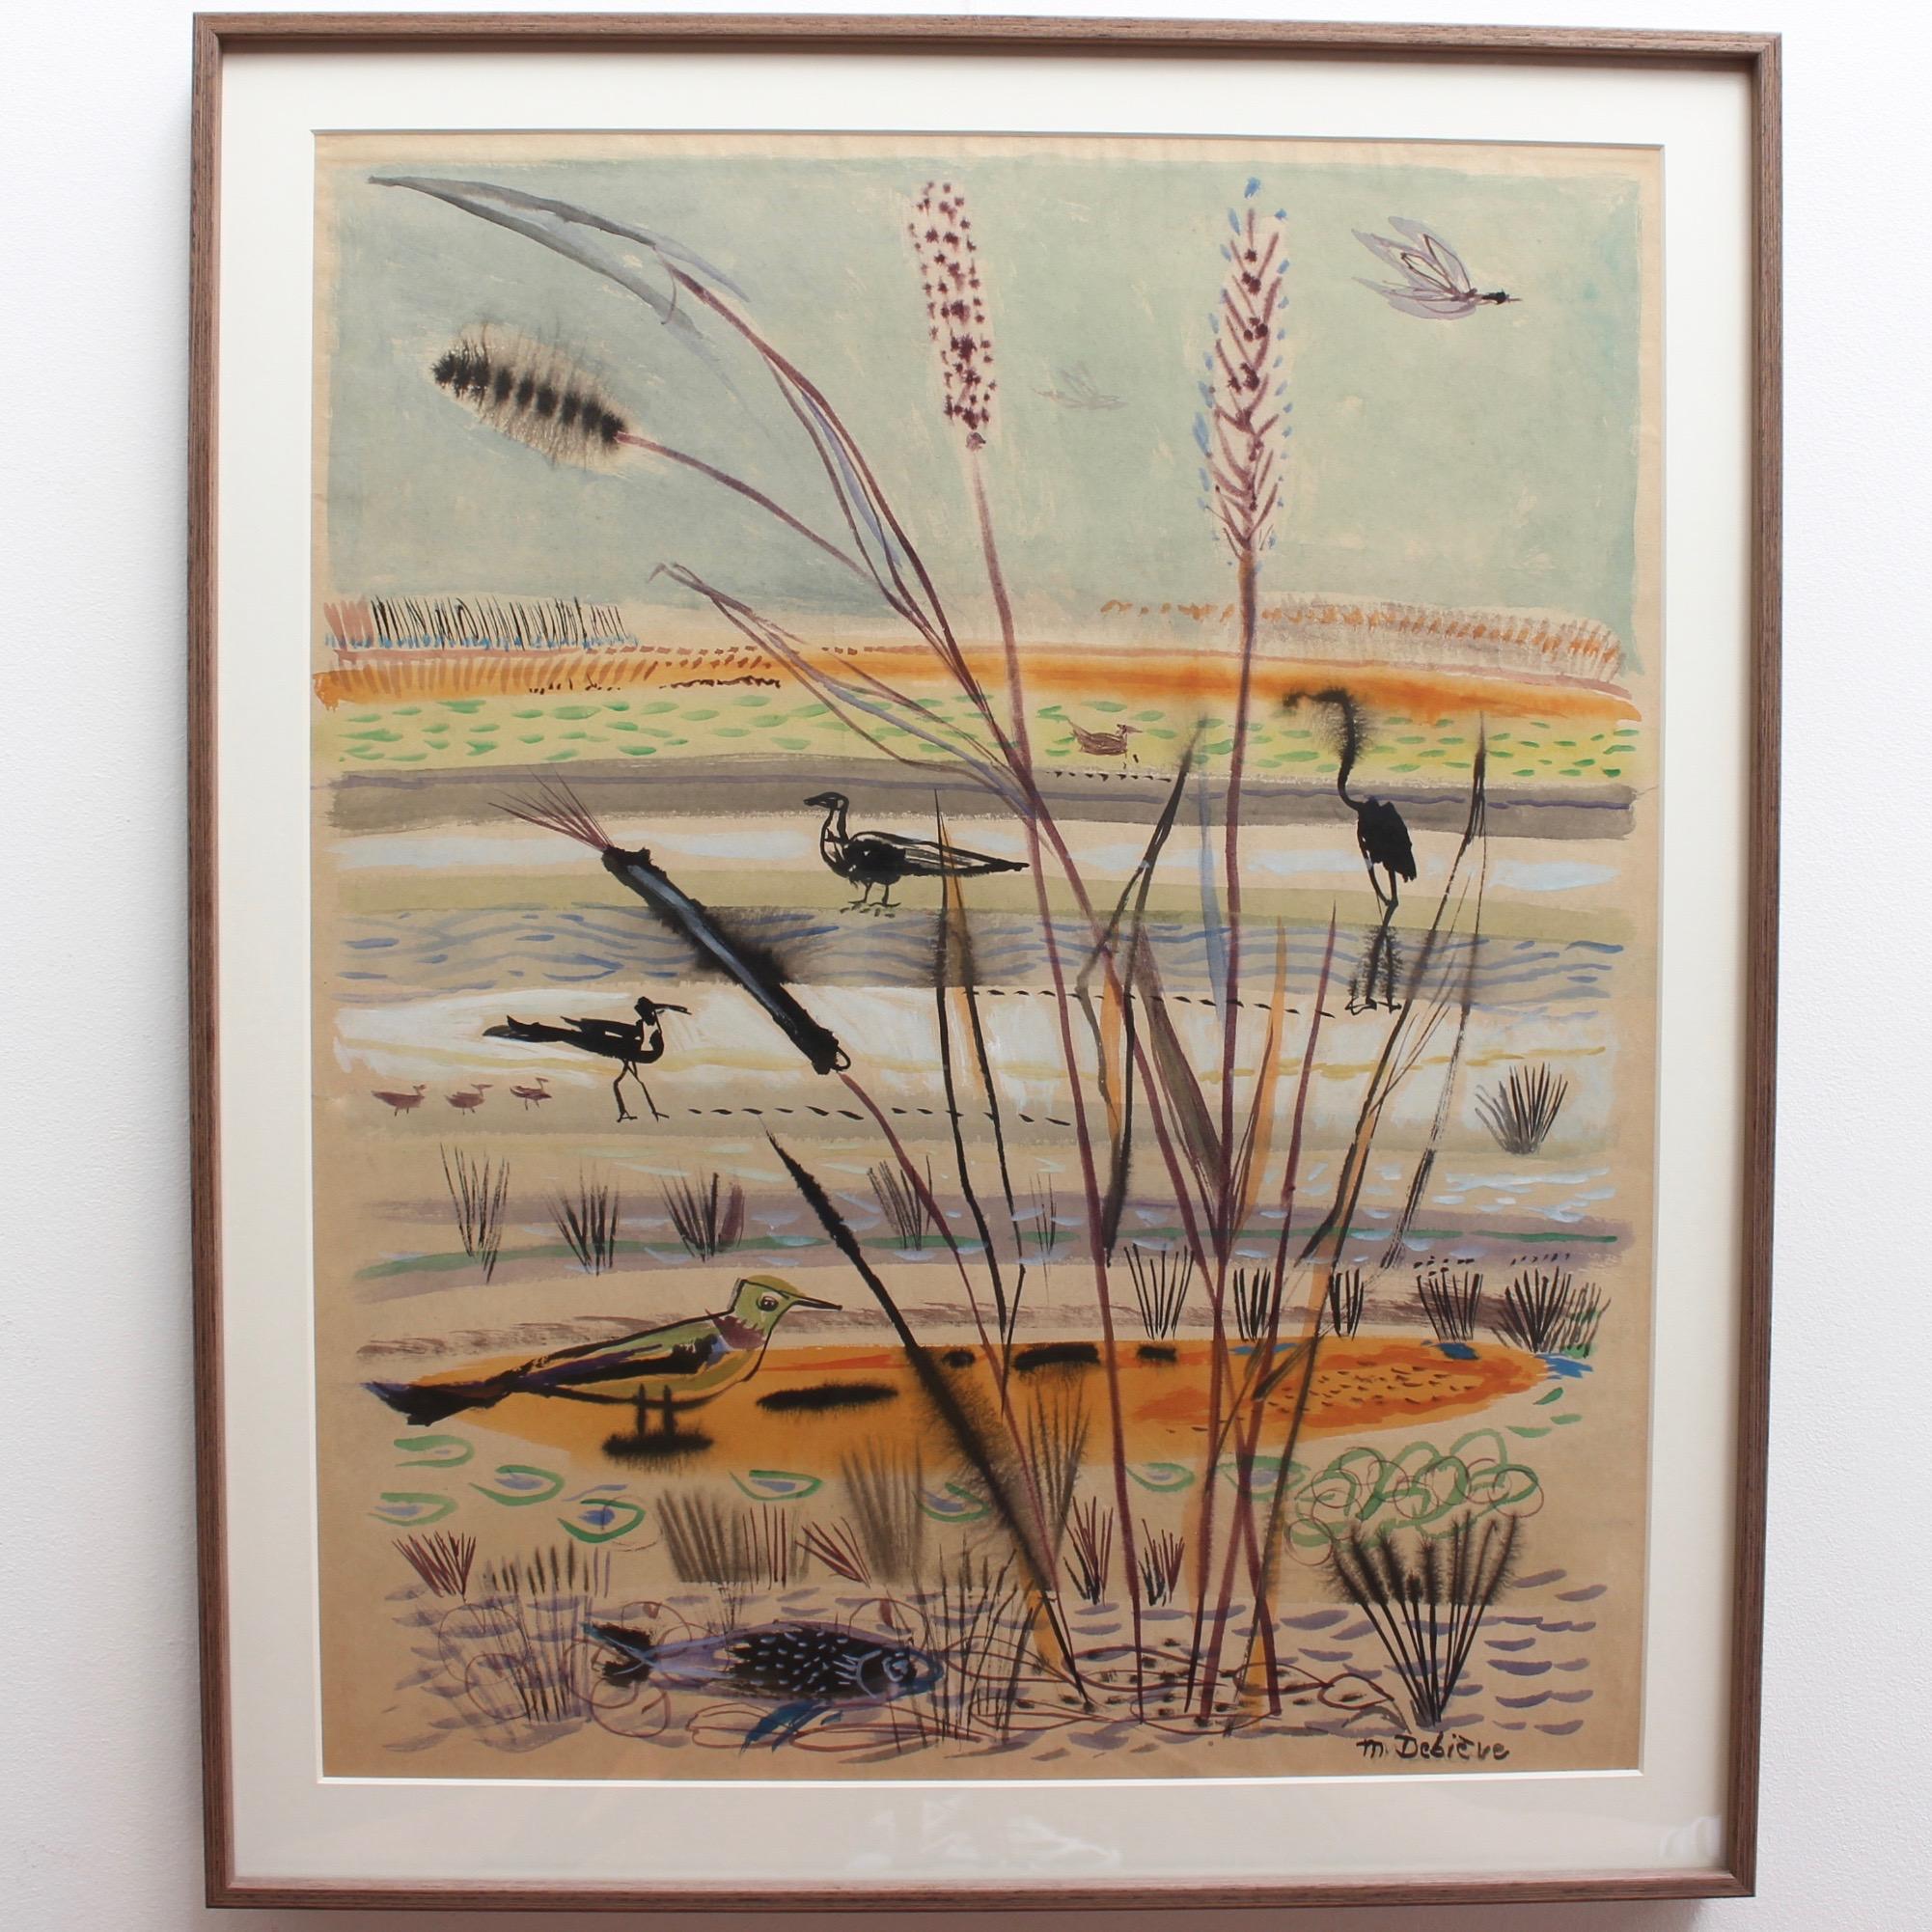 The Wetlands - Art by Michel Debiève